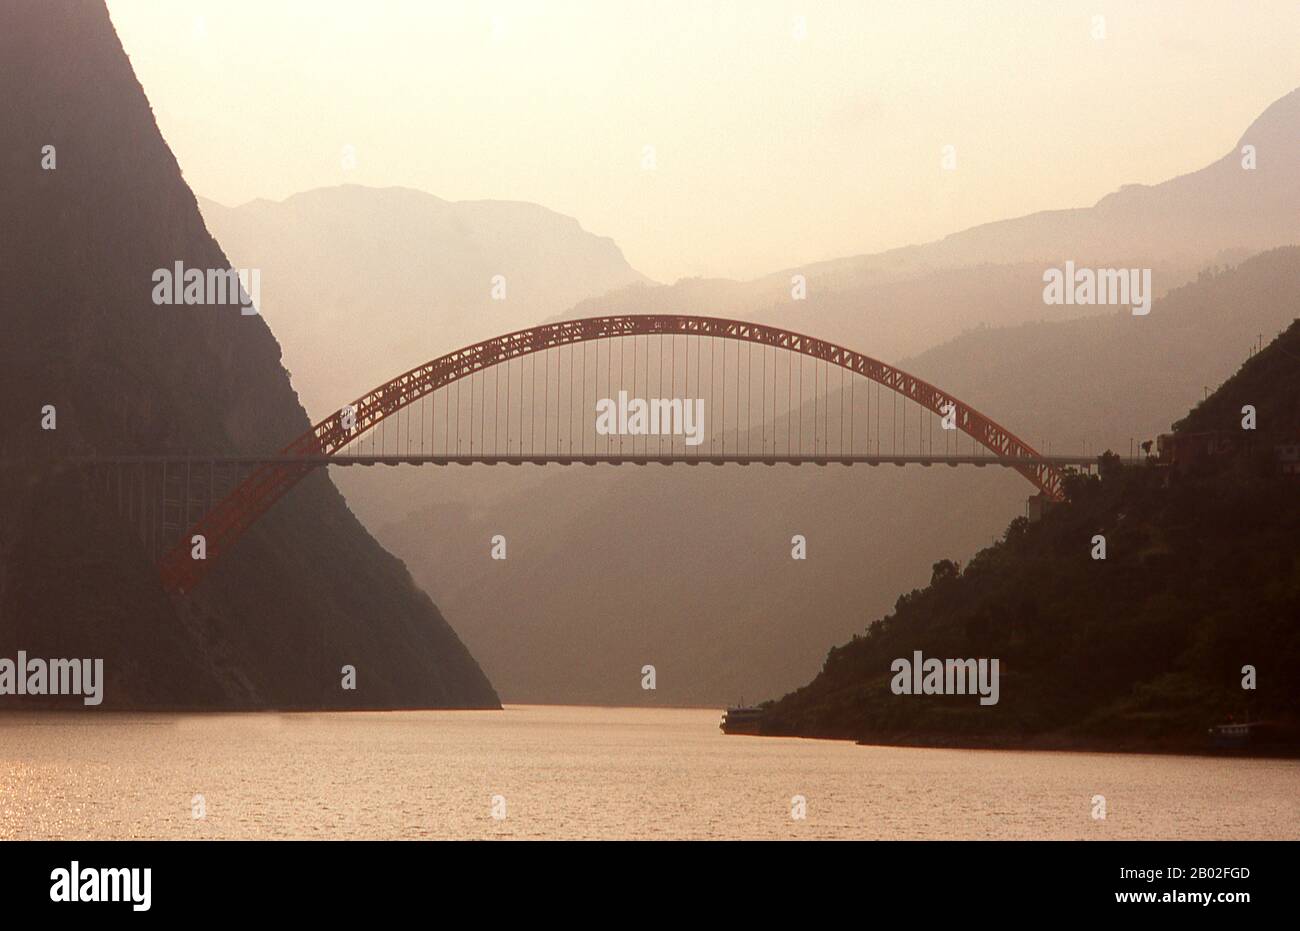 Le Tre Gole o le Gole di Yangtze si estendono dalle città occidentali di Fengjie e Yichang nel comune di Chongqing ad est, a valle della provincia di Hubei. La regione del fiume Yangtze (Chang Jiang) - Tre gole ha una lunghezza totale di circa 200 chilometri (120 miglia). Le Tre Gole occupano circa 120 chilometri all'interno di questa regione. Il Chang Jiang (fiume Yangzi) è il fiume più lungo della Cina e il terzo più lungo del mondo. Conosciuto a monte come Golden Sand River, scorre attraverso il cuore geografico, spirituale e storico della Cina. Dalla sua fonte nella Tanggula Foto Stock